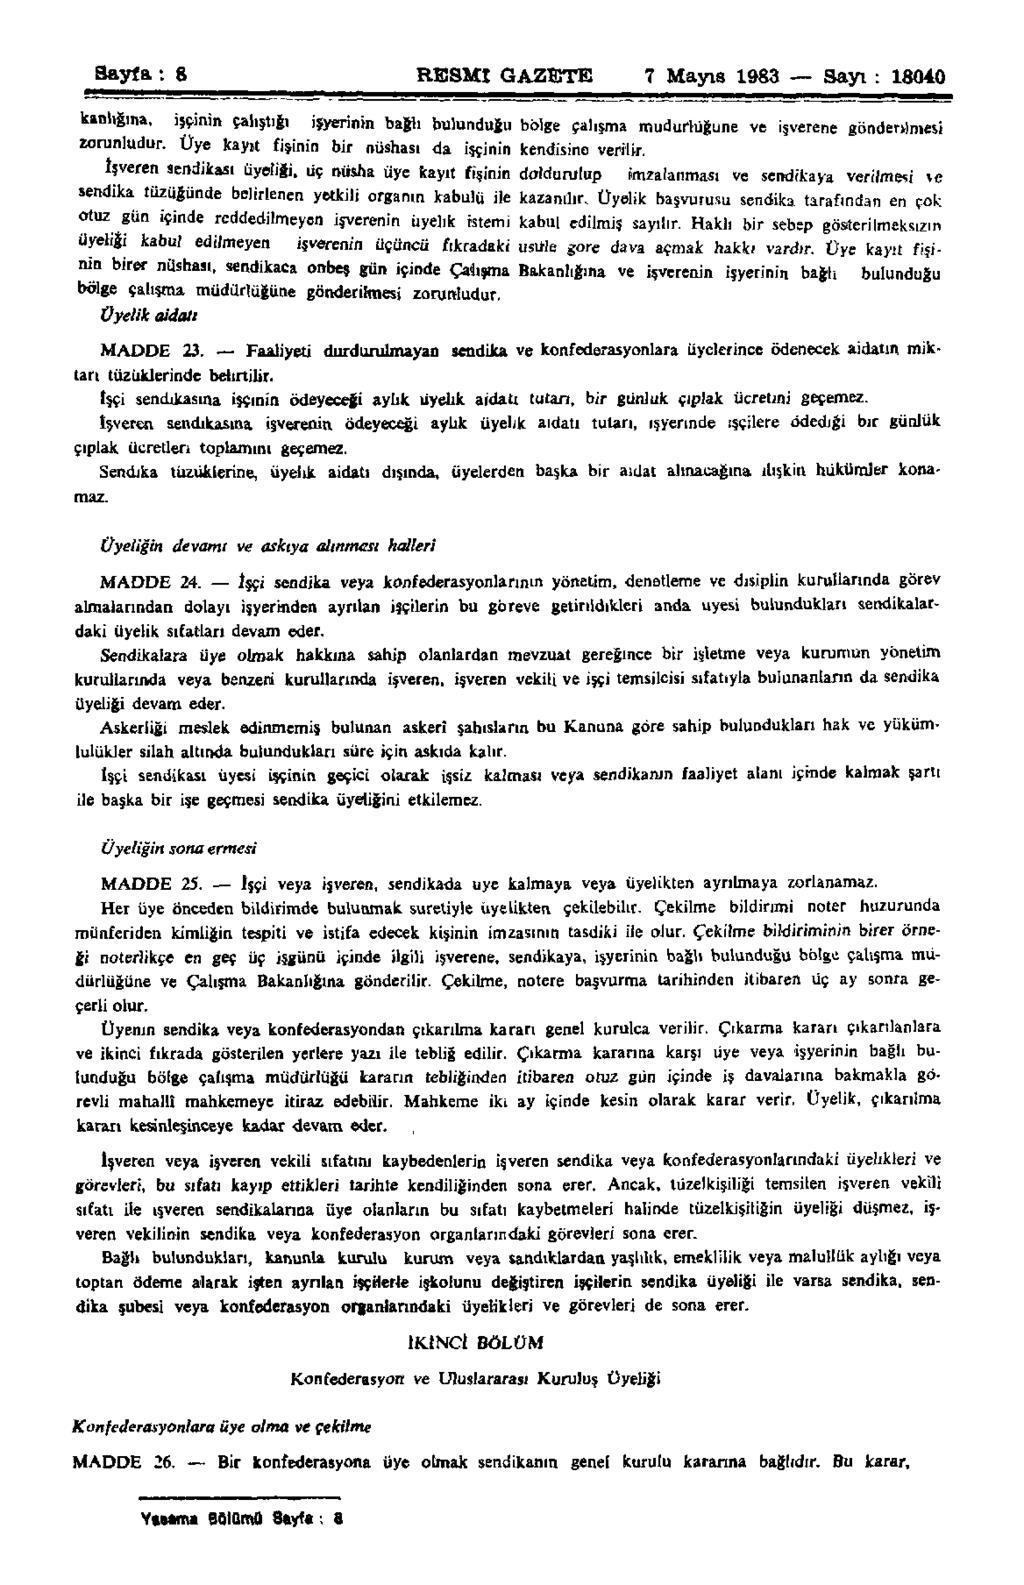 Sayfa: g RESMİ GAZETE 7 Mayıs 1983 Sayı : 18040 kanlığına, işçinin çalıştığı işyerinin bağlı bulunduğu bblge çalışma müdürlüğüne ve işverene gönderilmesi zorunludur.